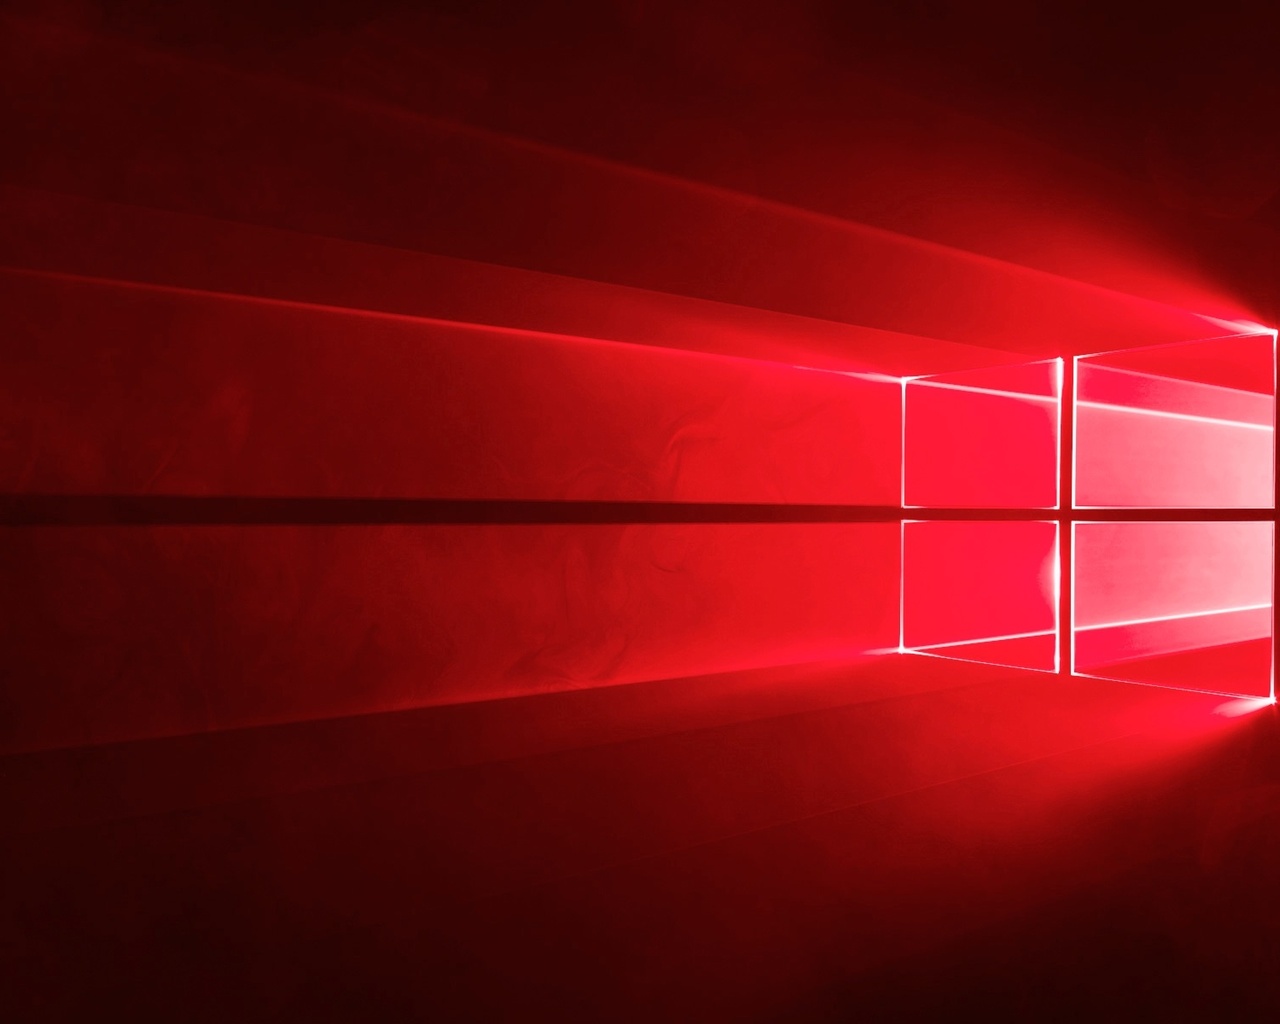 Windows 10, Windows 10 Official, Windows 10 Red, Windows - Windows 10 Backgrounds Red , HD Wallpaper & Backgrounds